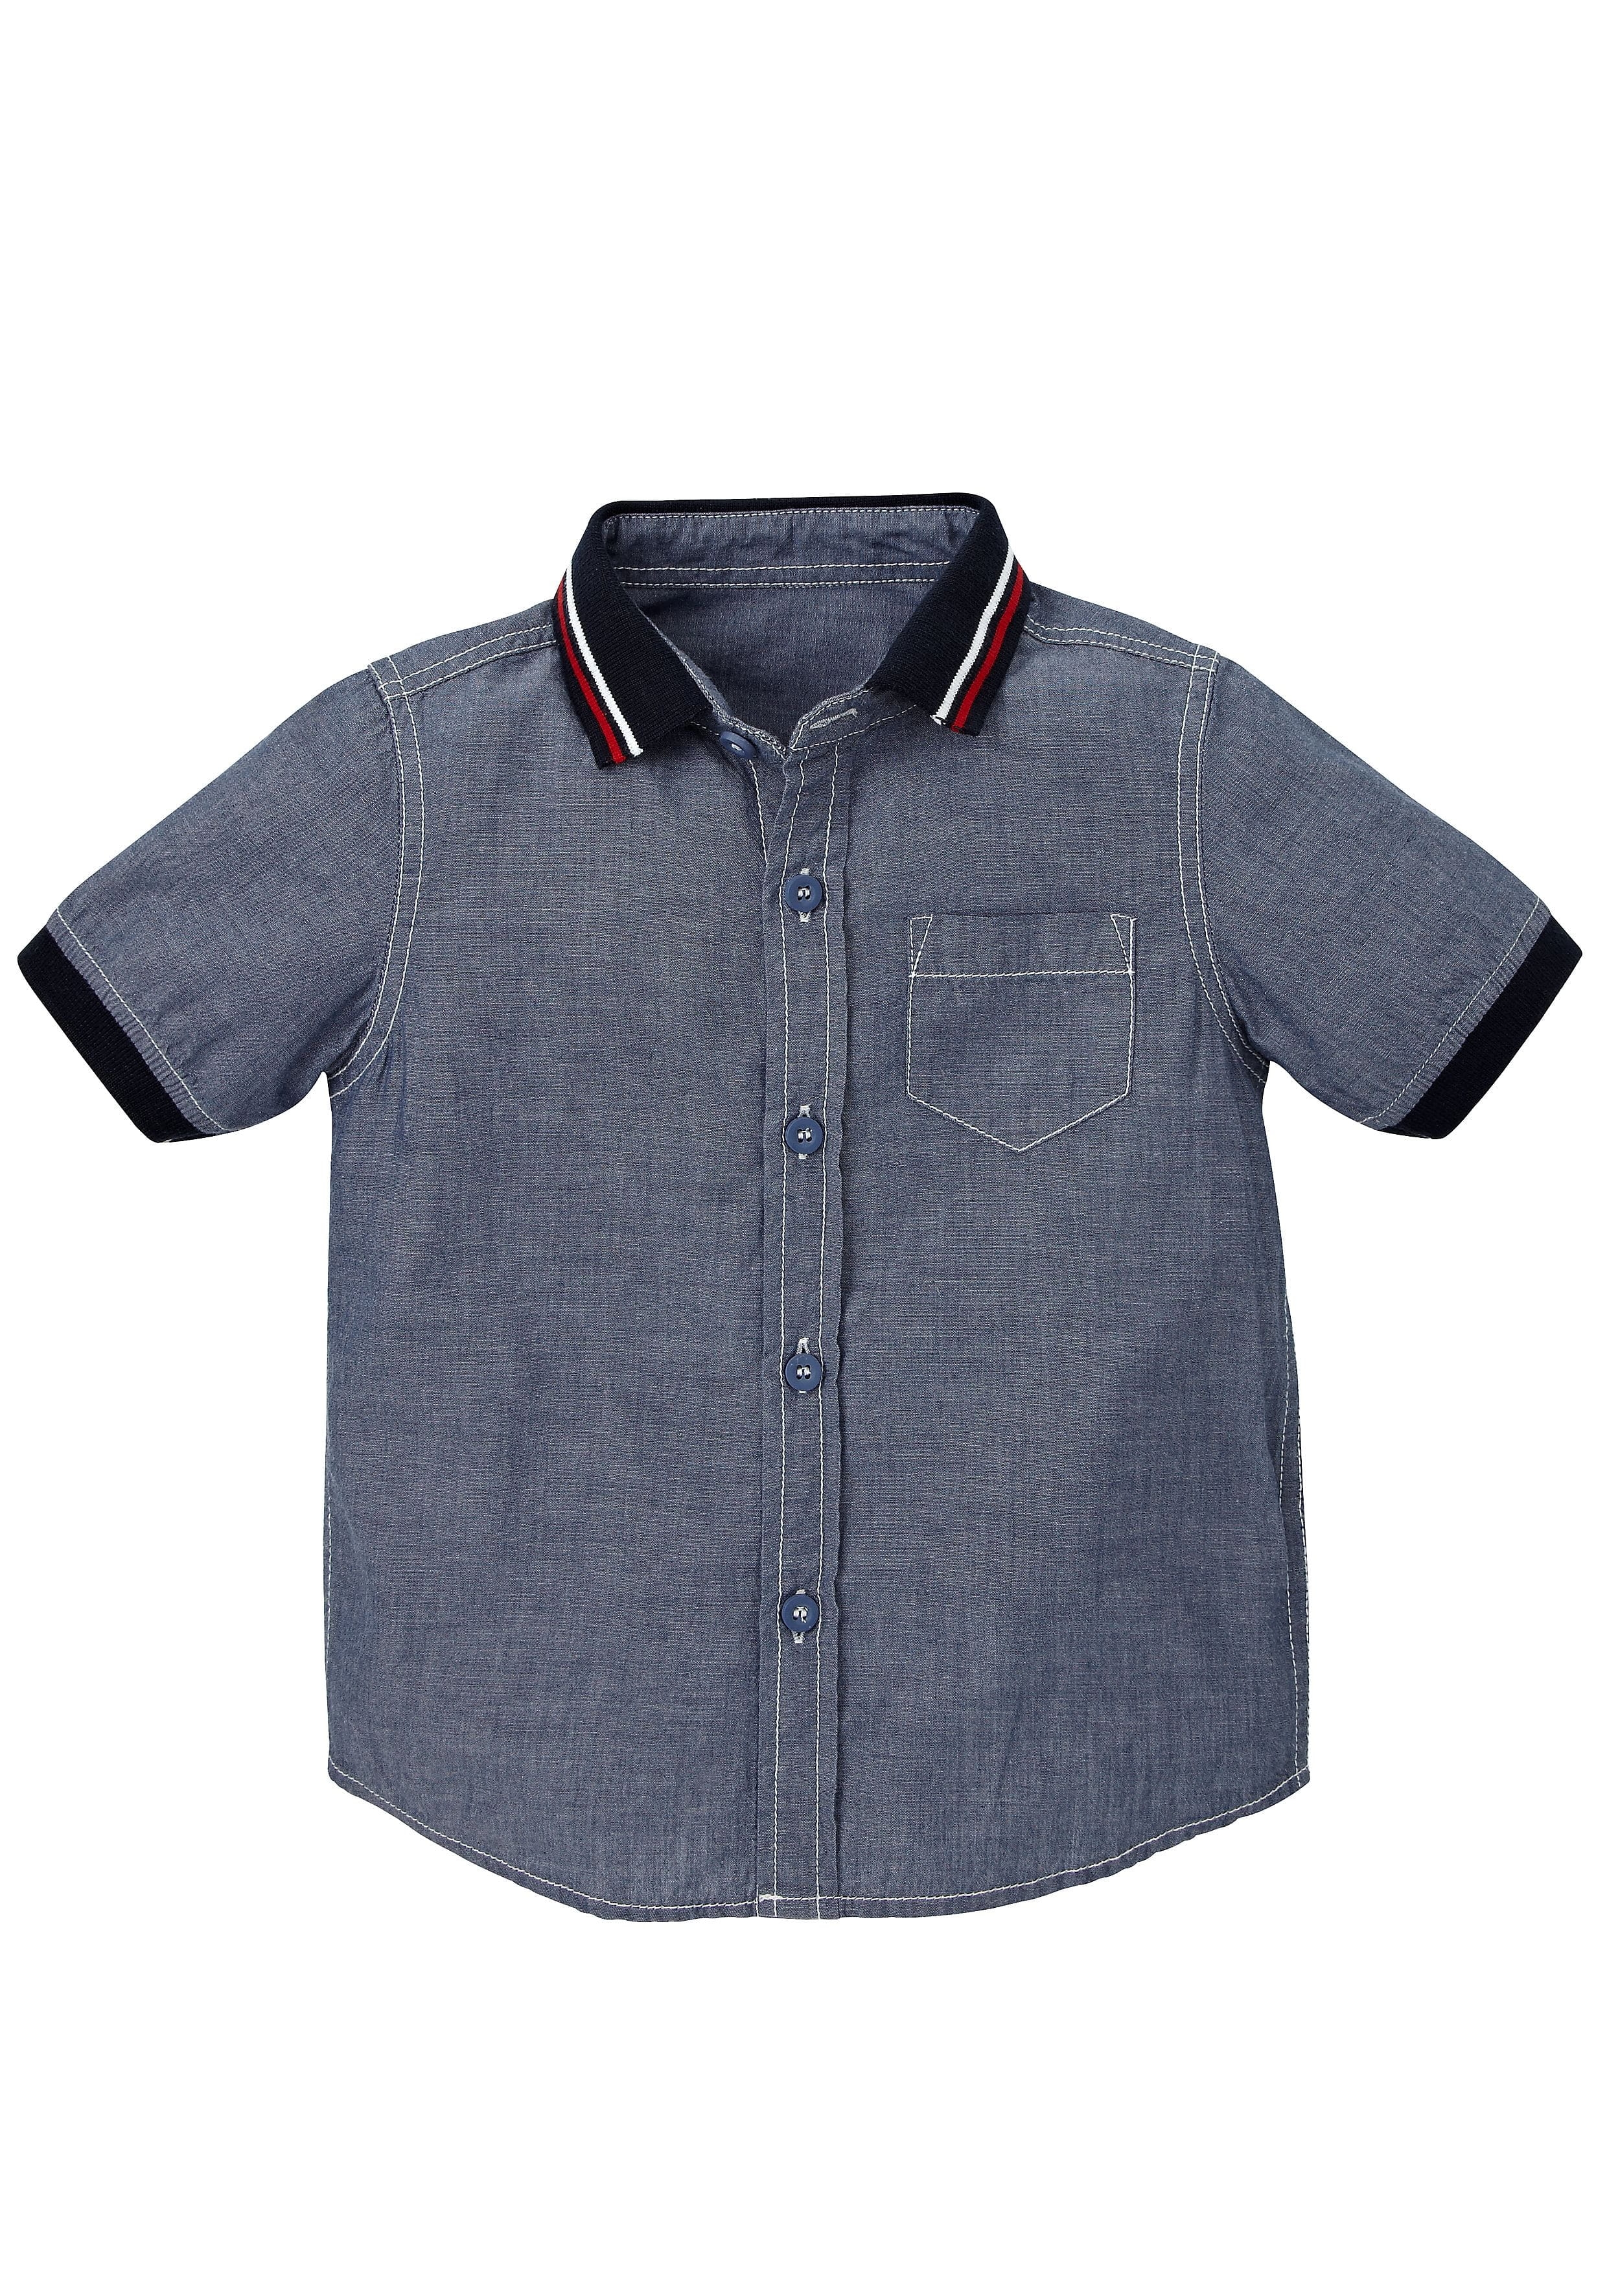 Mothercare | Boys Half Sleeves Chambray Shirt Ribbed Collar - Navy 0